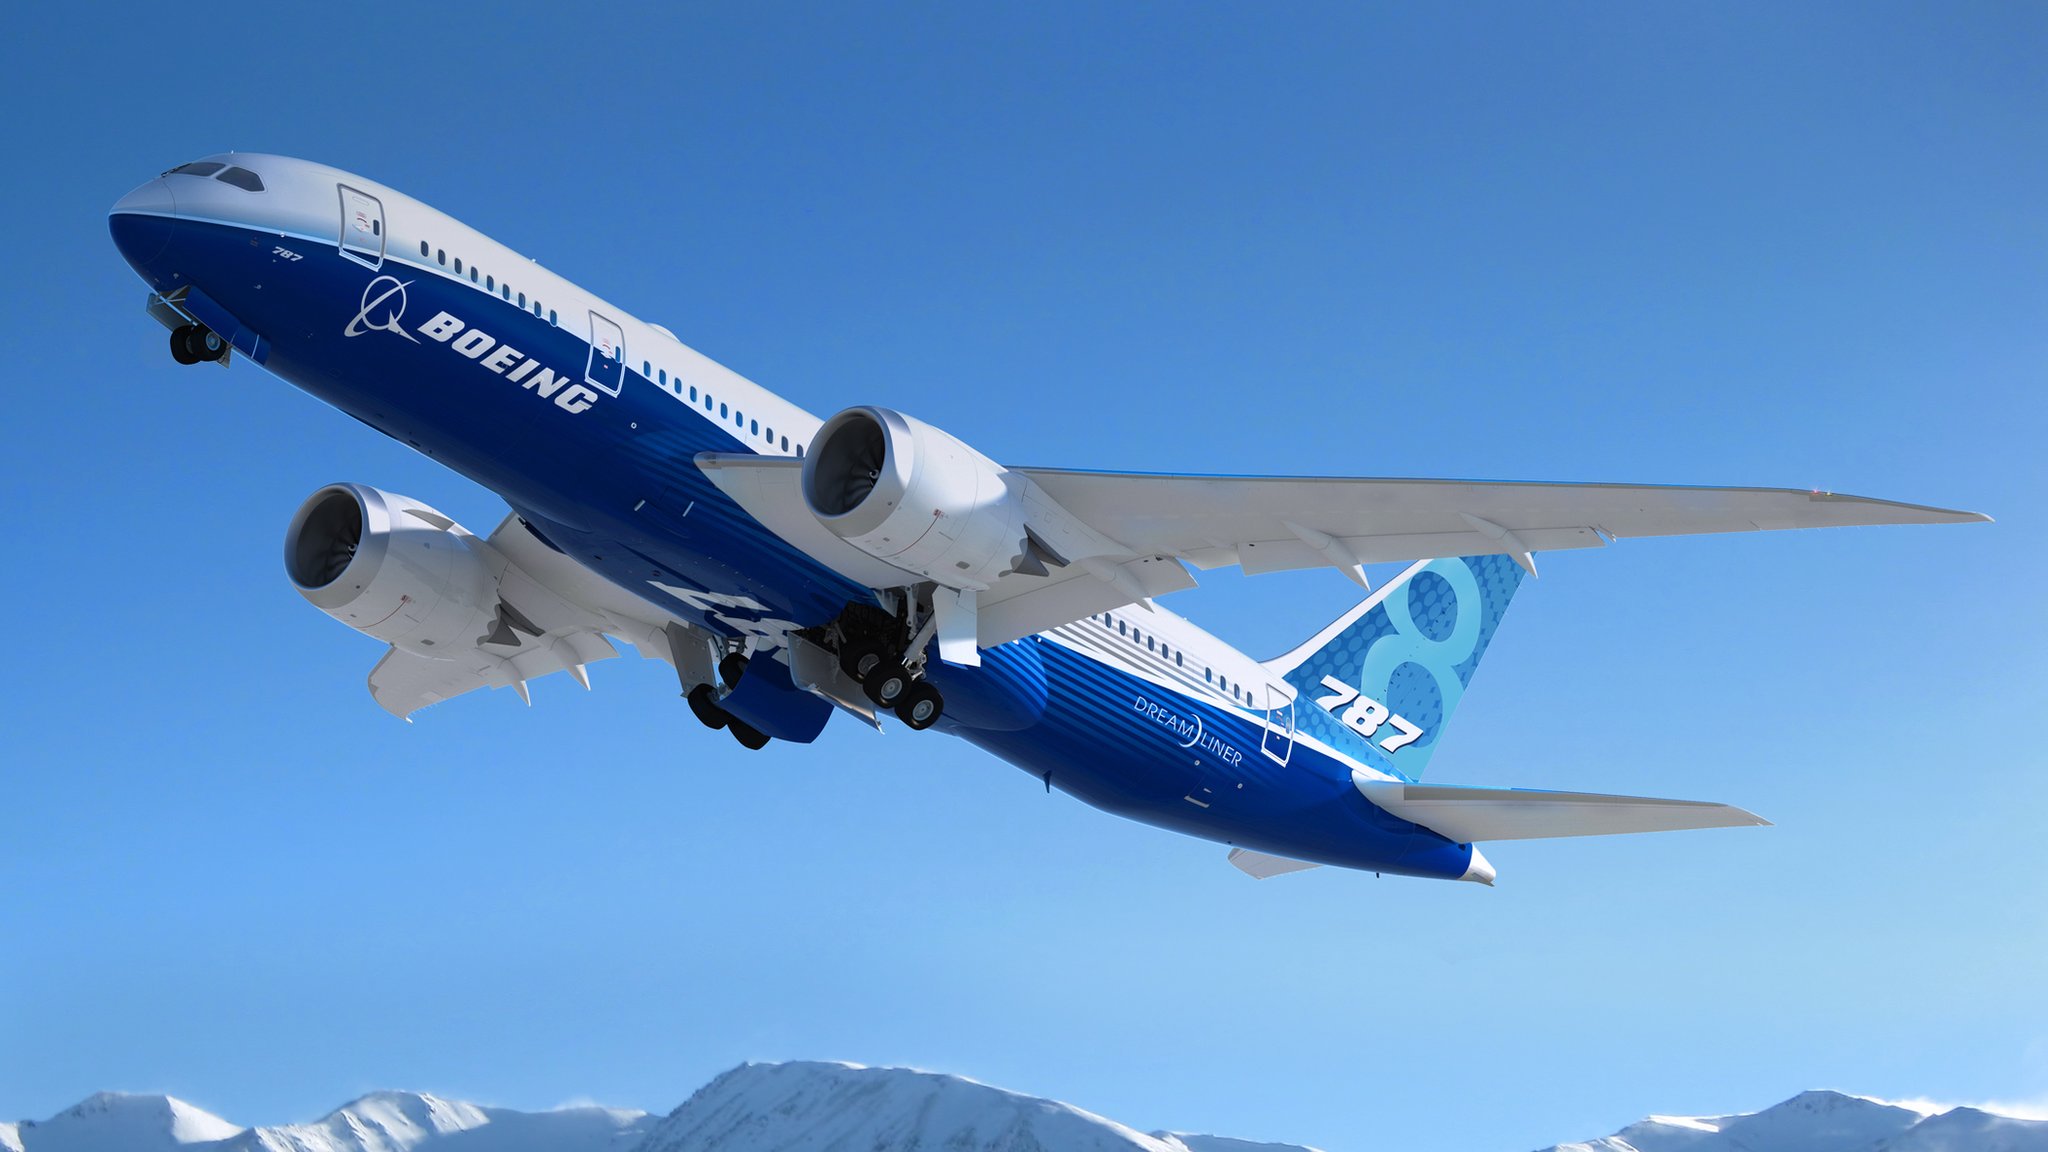 A falha no Boeing 787 que poderia deixar passageiros sem oxigênio, segundo ex-funcionário - BBC News Brasil